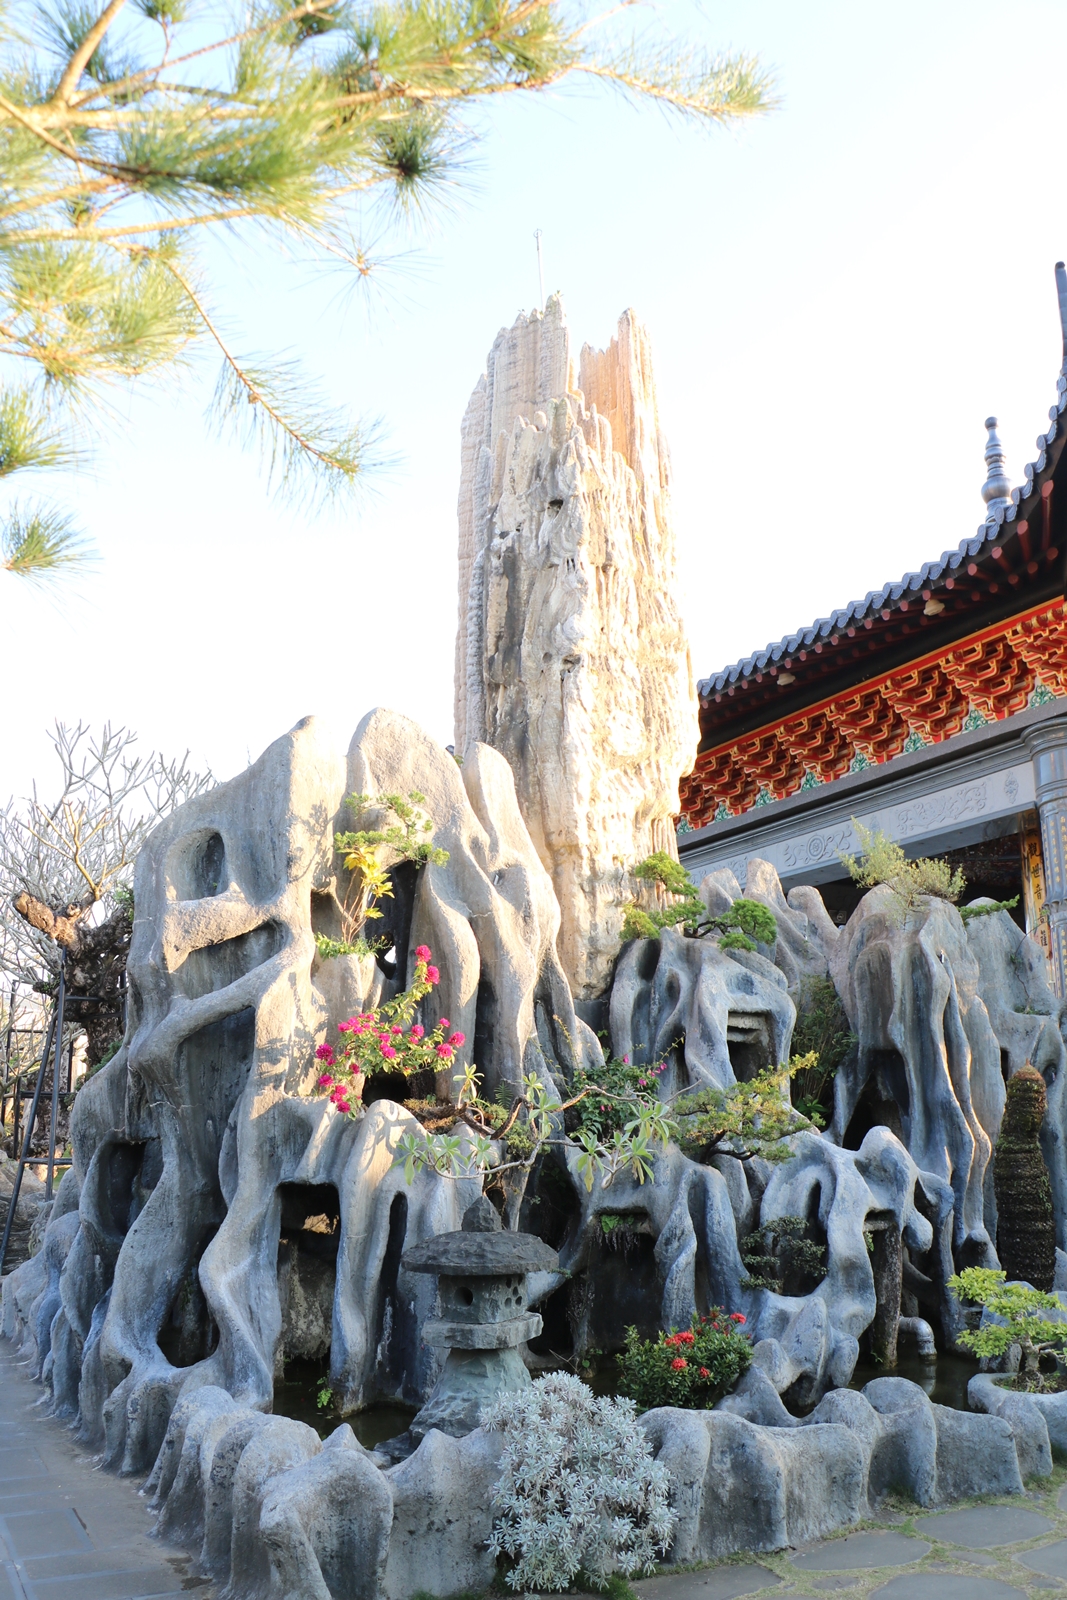 台南楠西景點。玄空法寺 巨大鐘乳石林、奇木雅石、樹化玉、日式禪風庭院